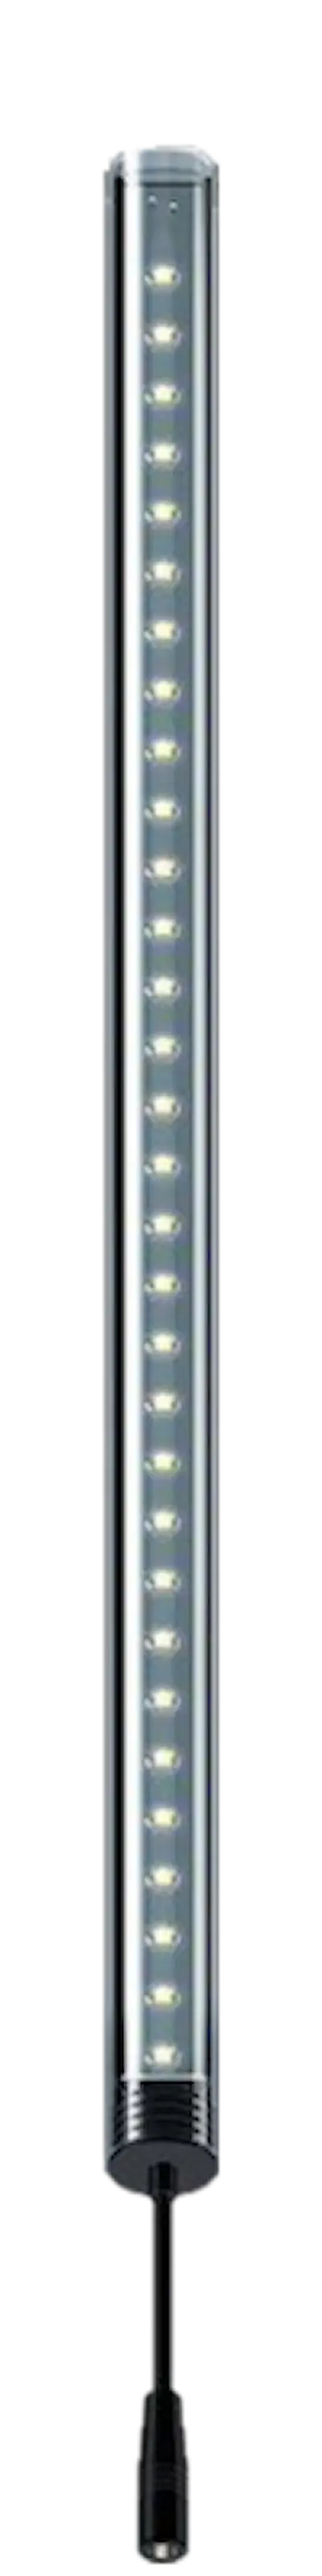 LightWave LED komplett sett, 270 - 350 mm